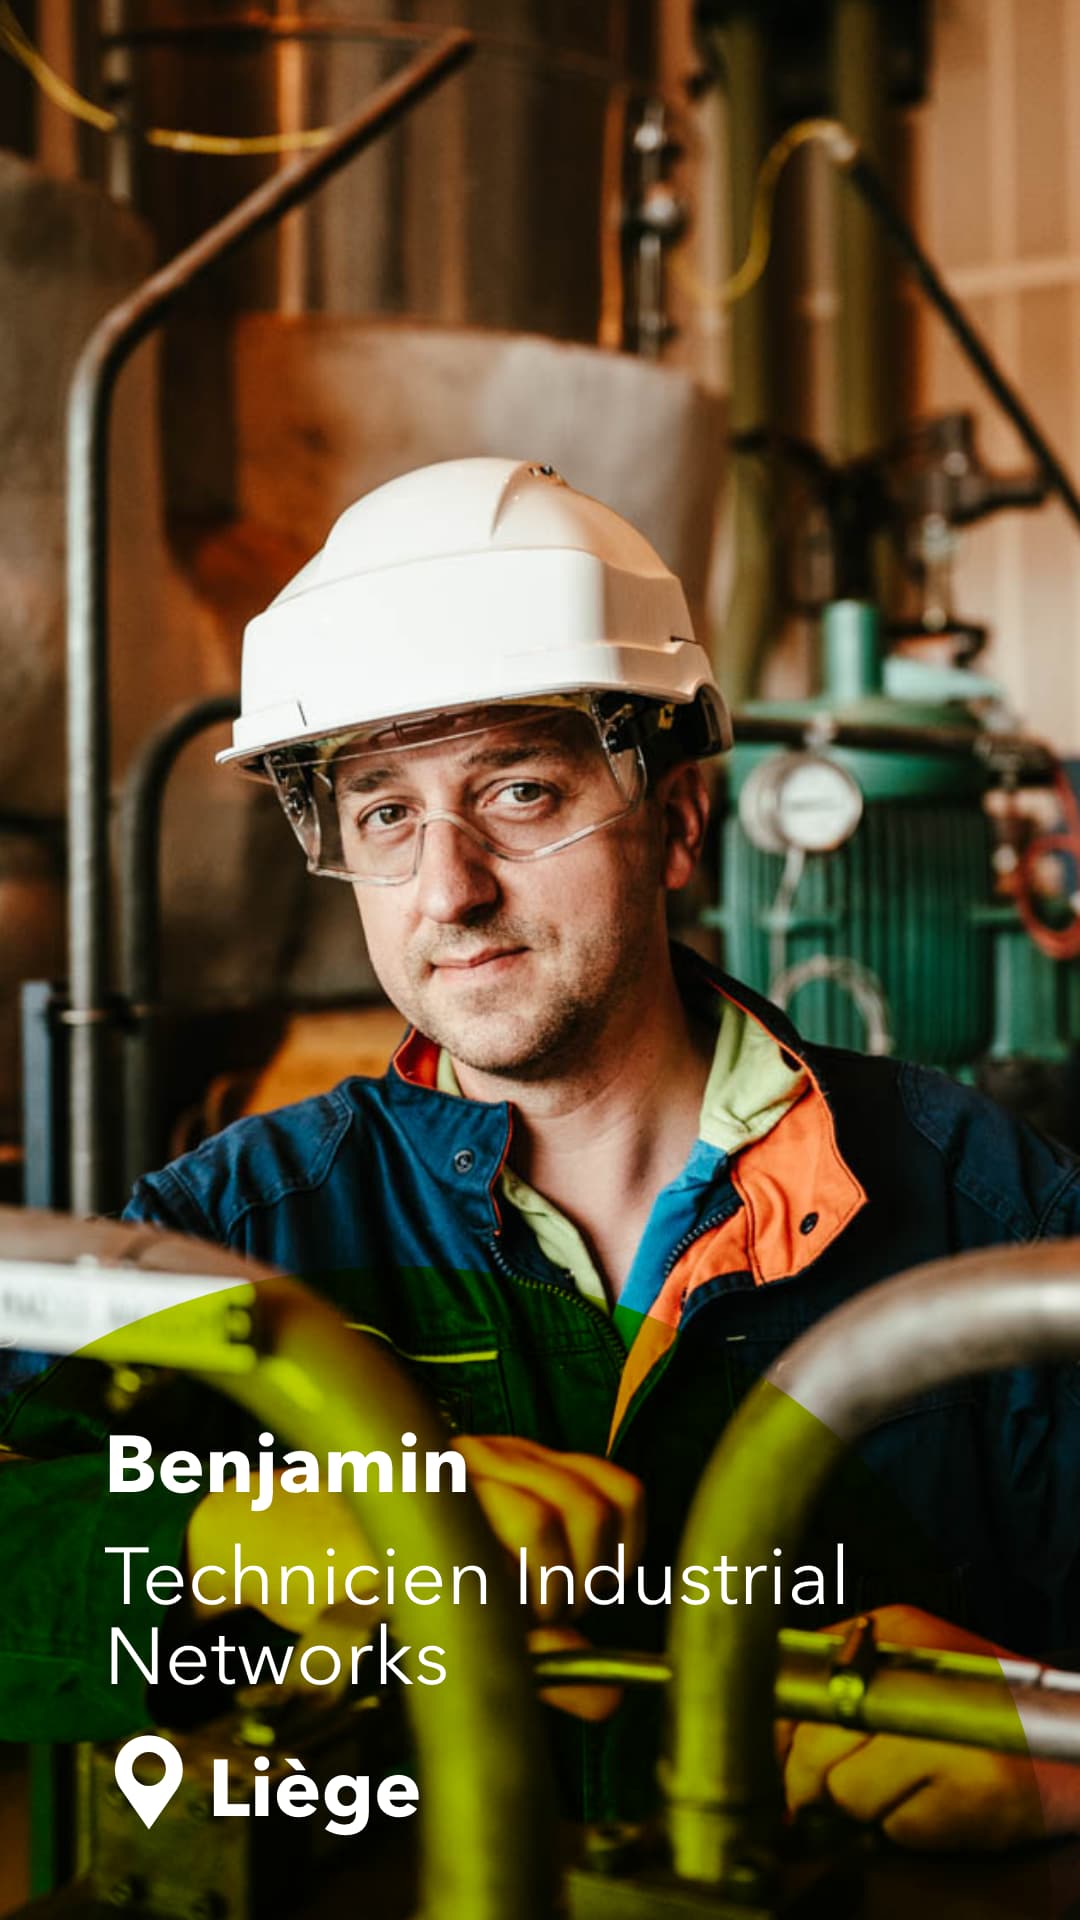 Benjamin - Technicien Industrial Networks - Liège